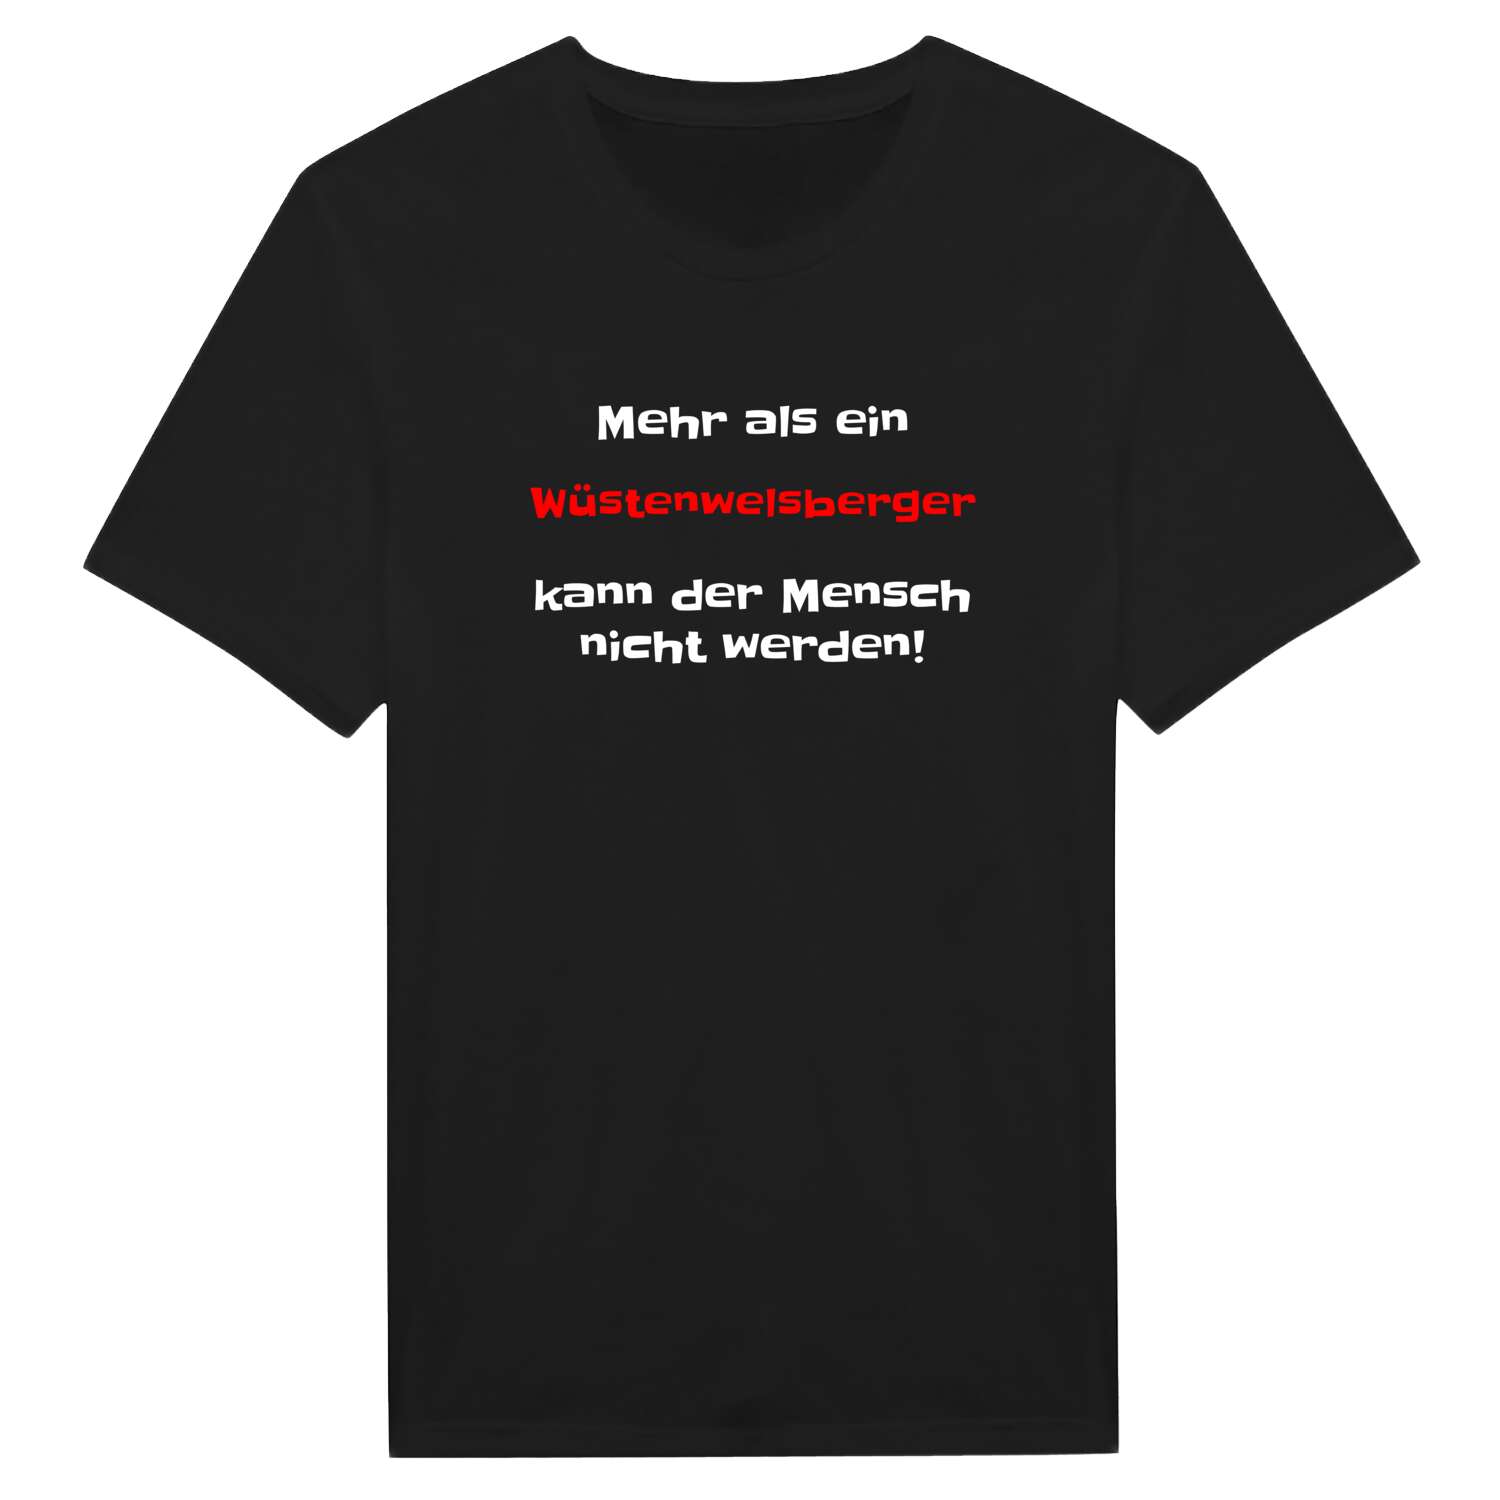 Wüstenwelsberg T-Shirt »Mehr als ein«